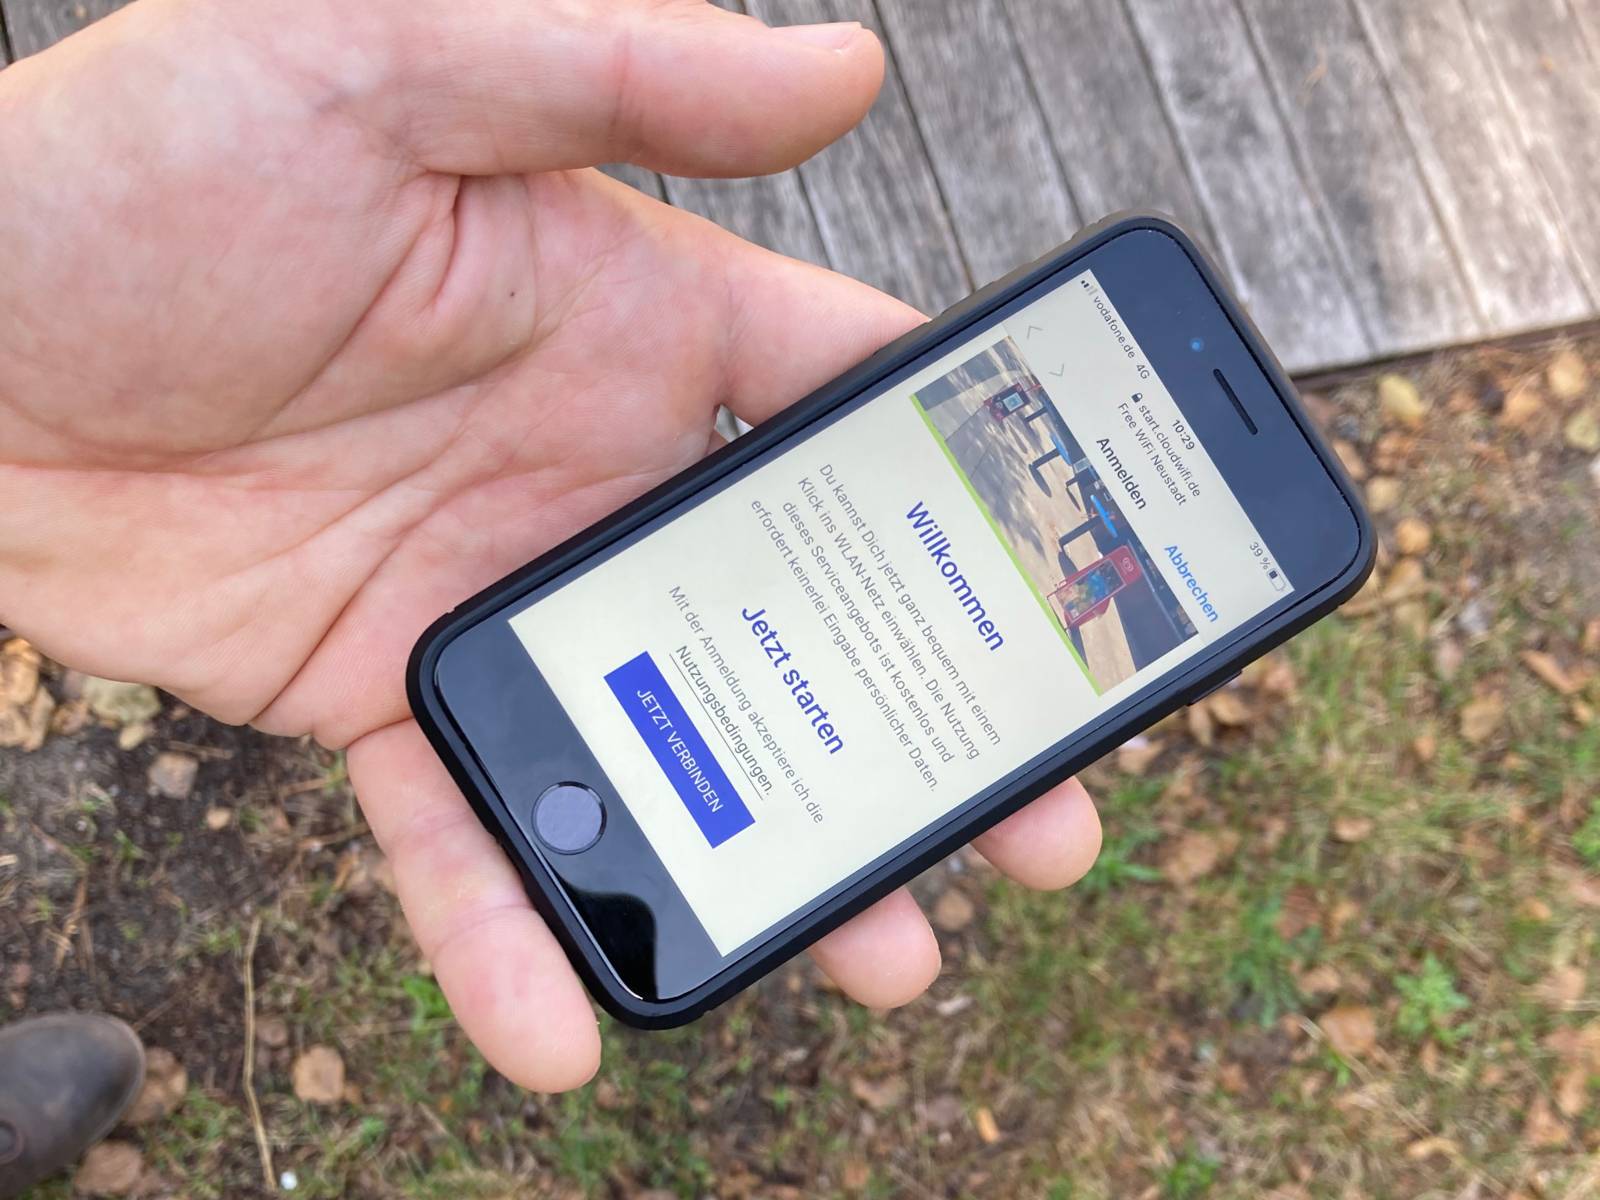 Ein Smartphone in einer Hand, auf dem Bildschirm steht unter anderem "Willkommen" und "Jetzt starten"